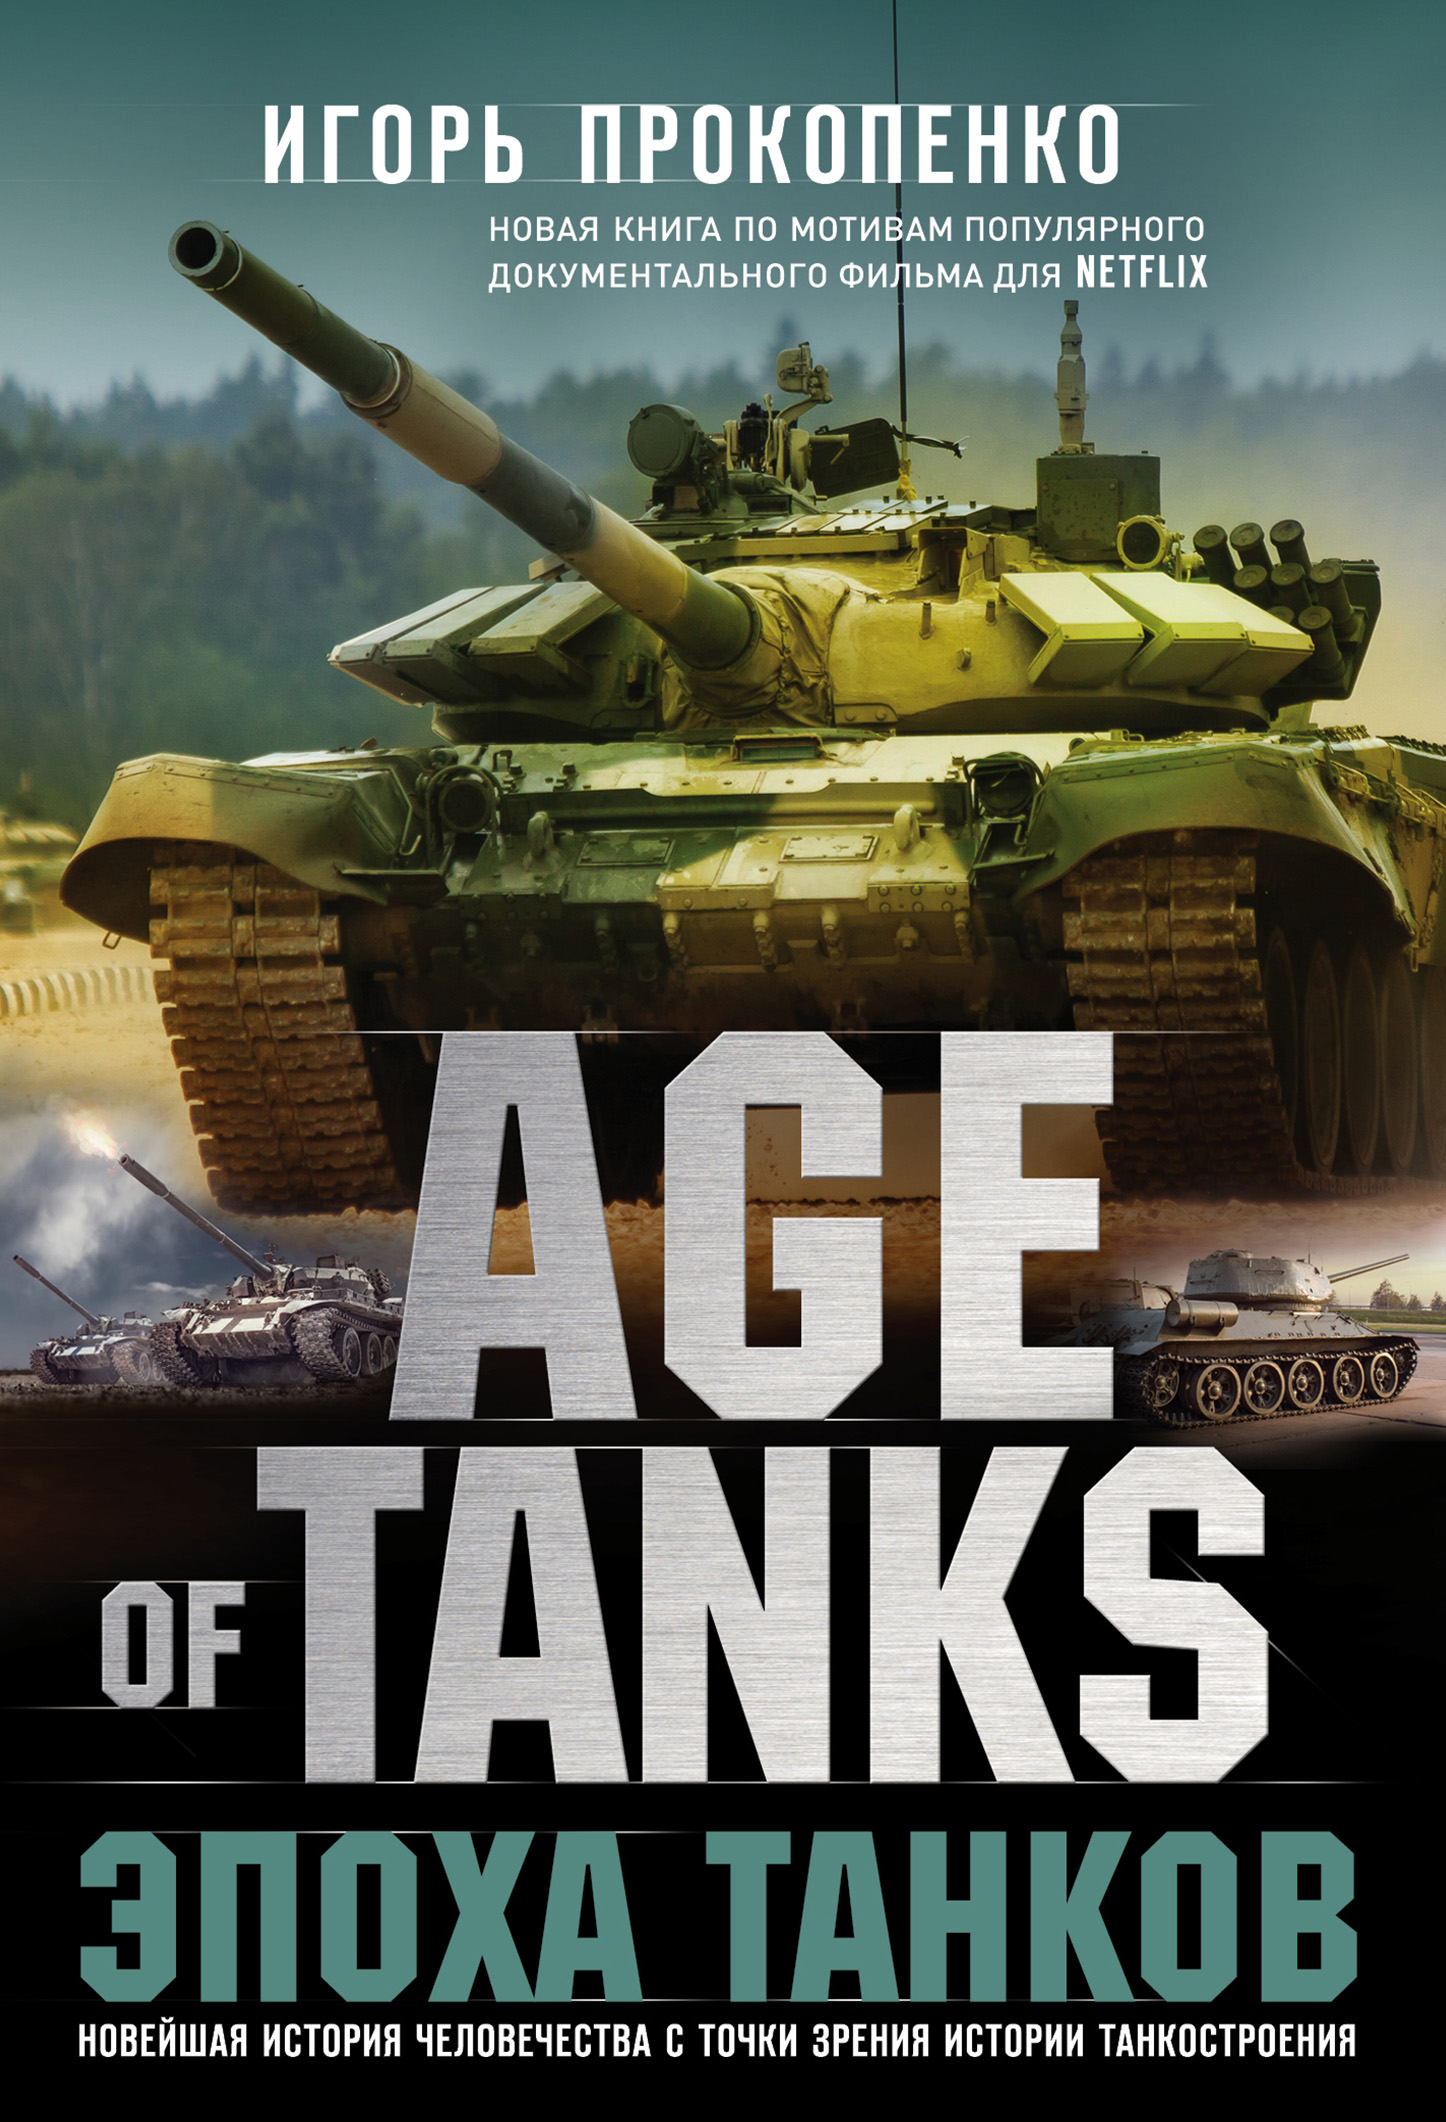 Книга Age of Tanks. Эпоха танков из серии , созданная Игорь Прокопенко, может относится к жанру Военное дело, спецслужбы. Стоимость электронной книги Age of Tanks. Эпоха танков с идентификатором 48640352 составляет 349.00 руб.